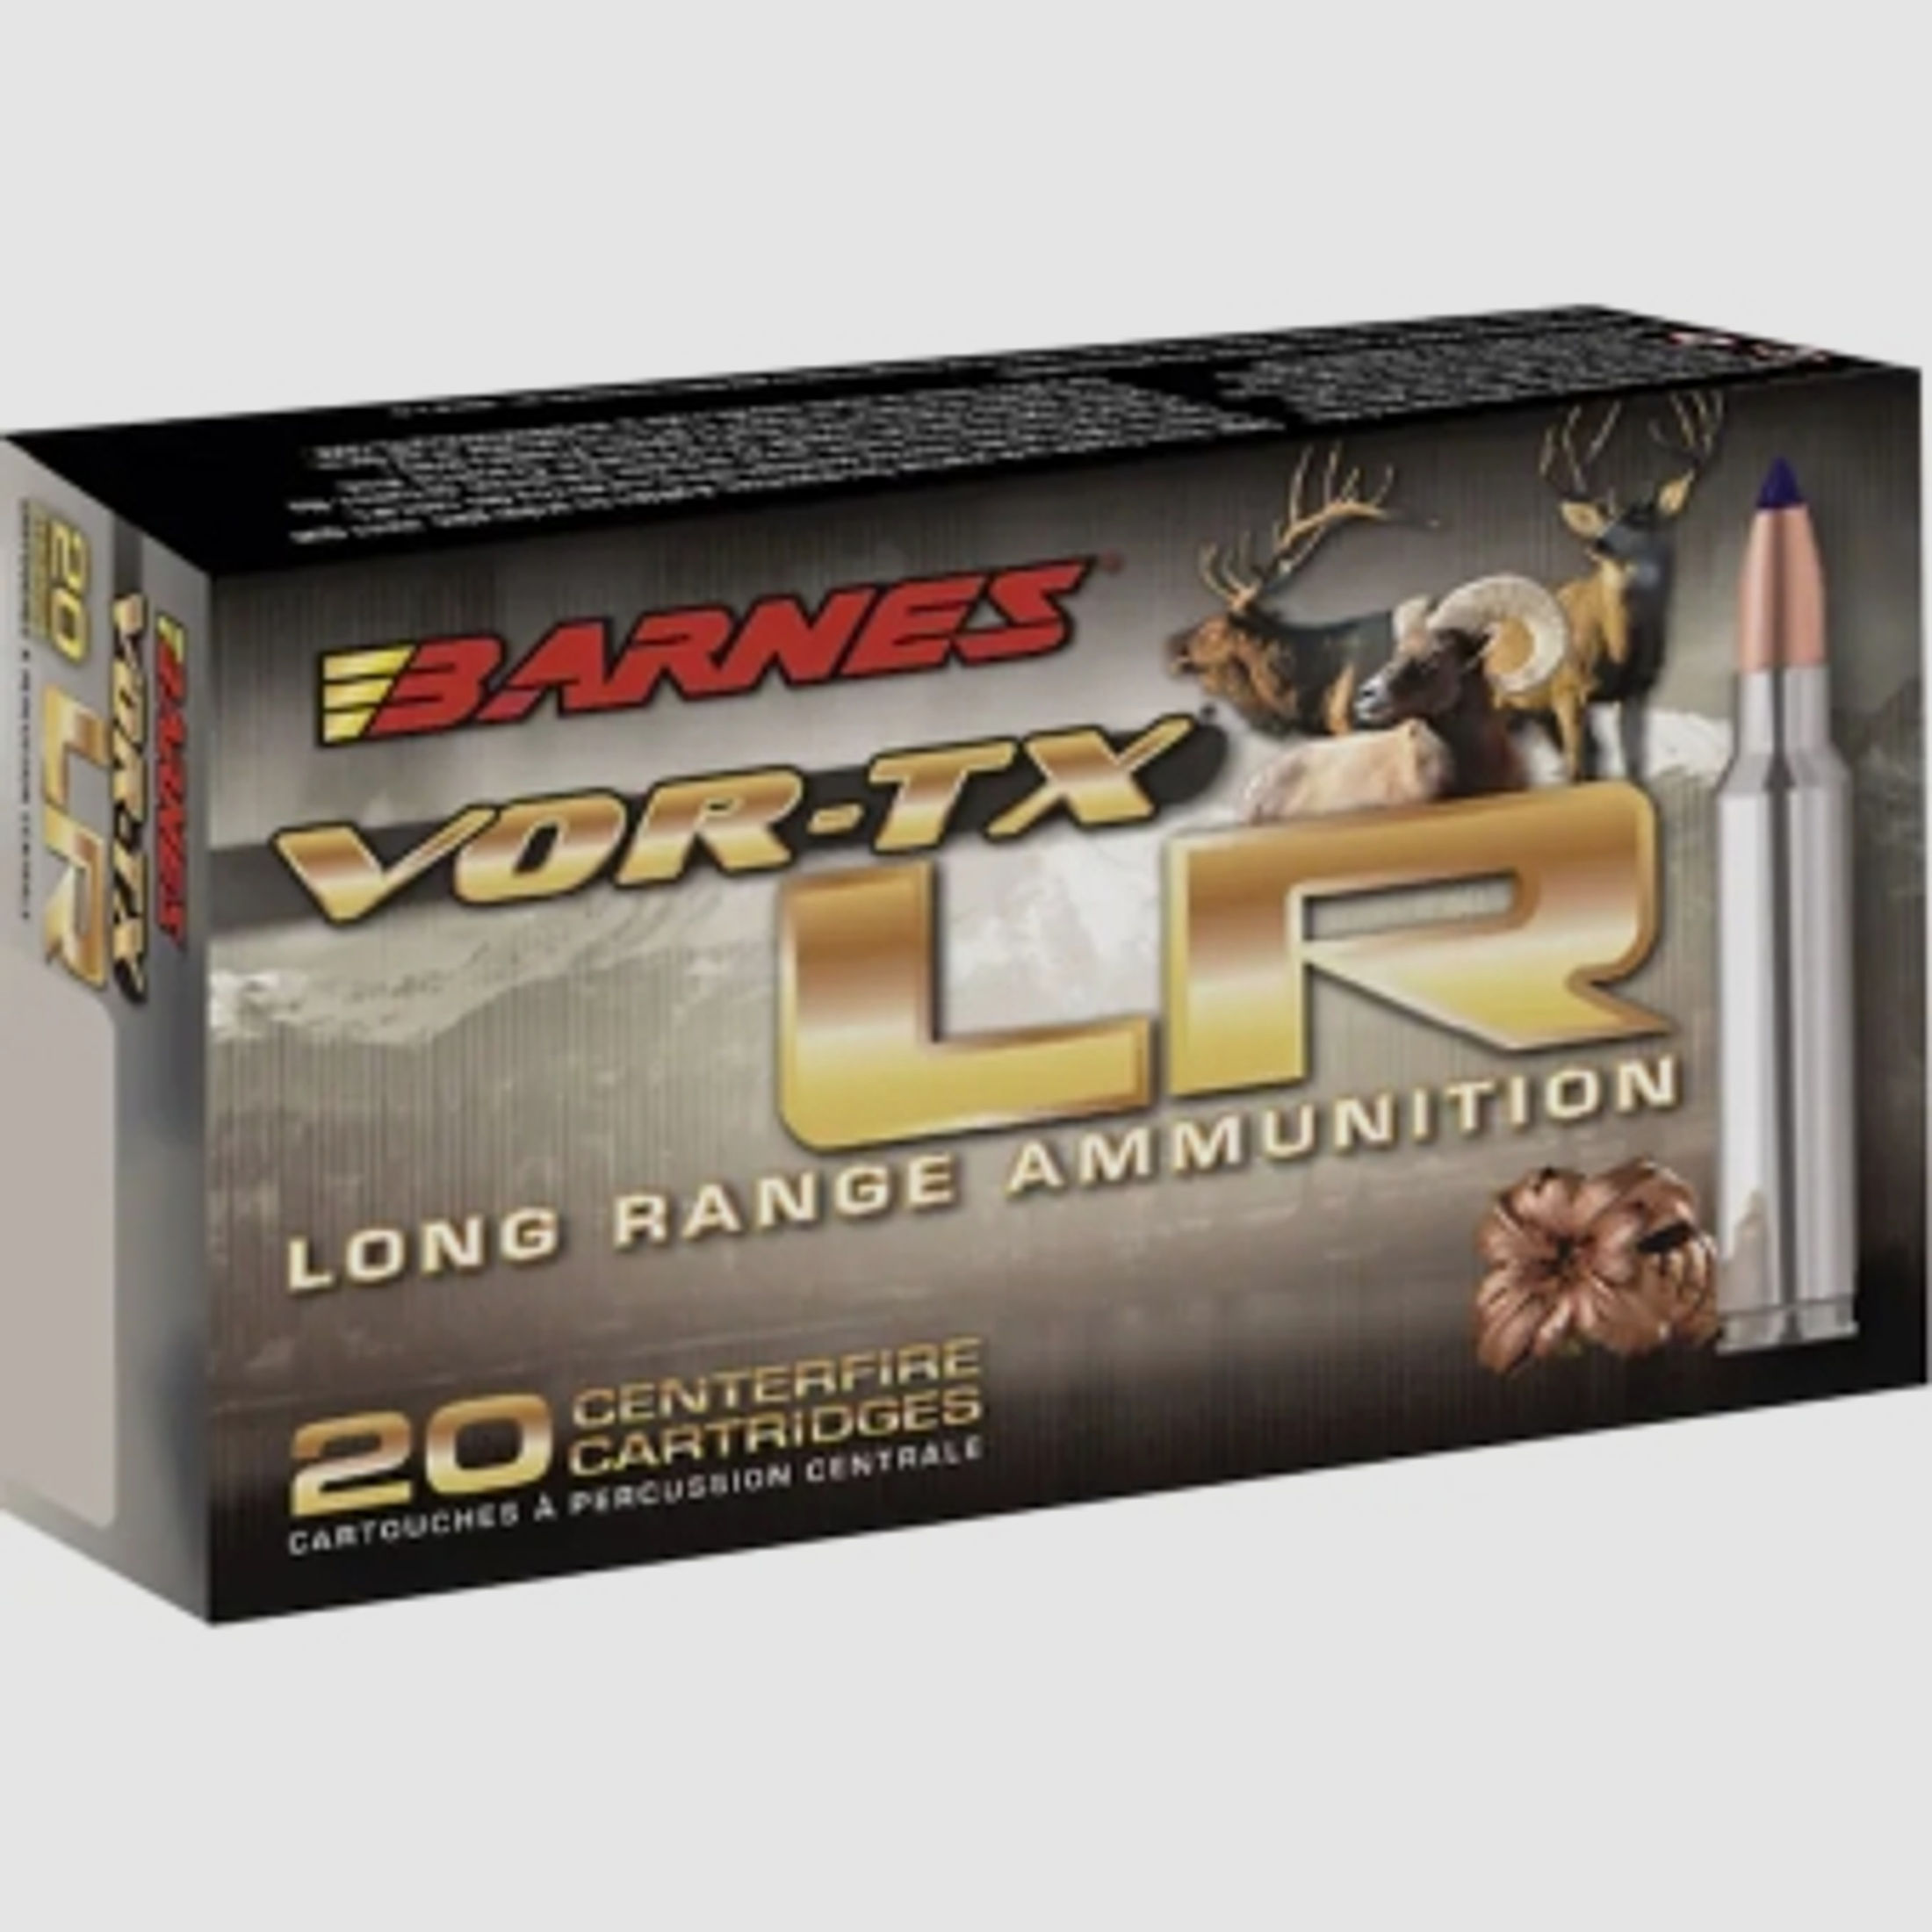 Barnes VOR-TX Long Range .300 Win. Mag. 190GR LRX Boat Tail 20 Patronen